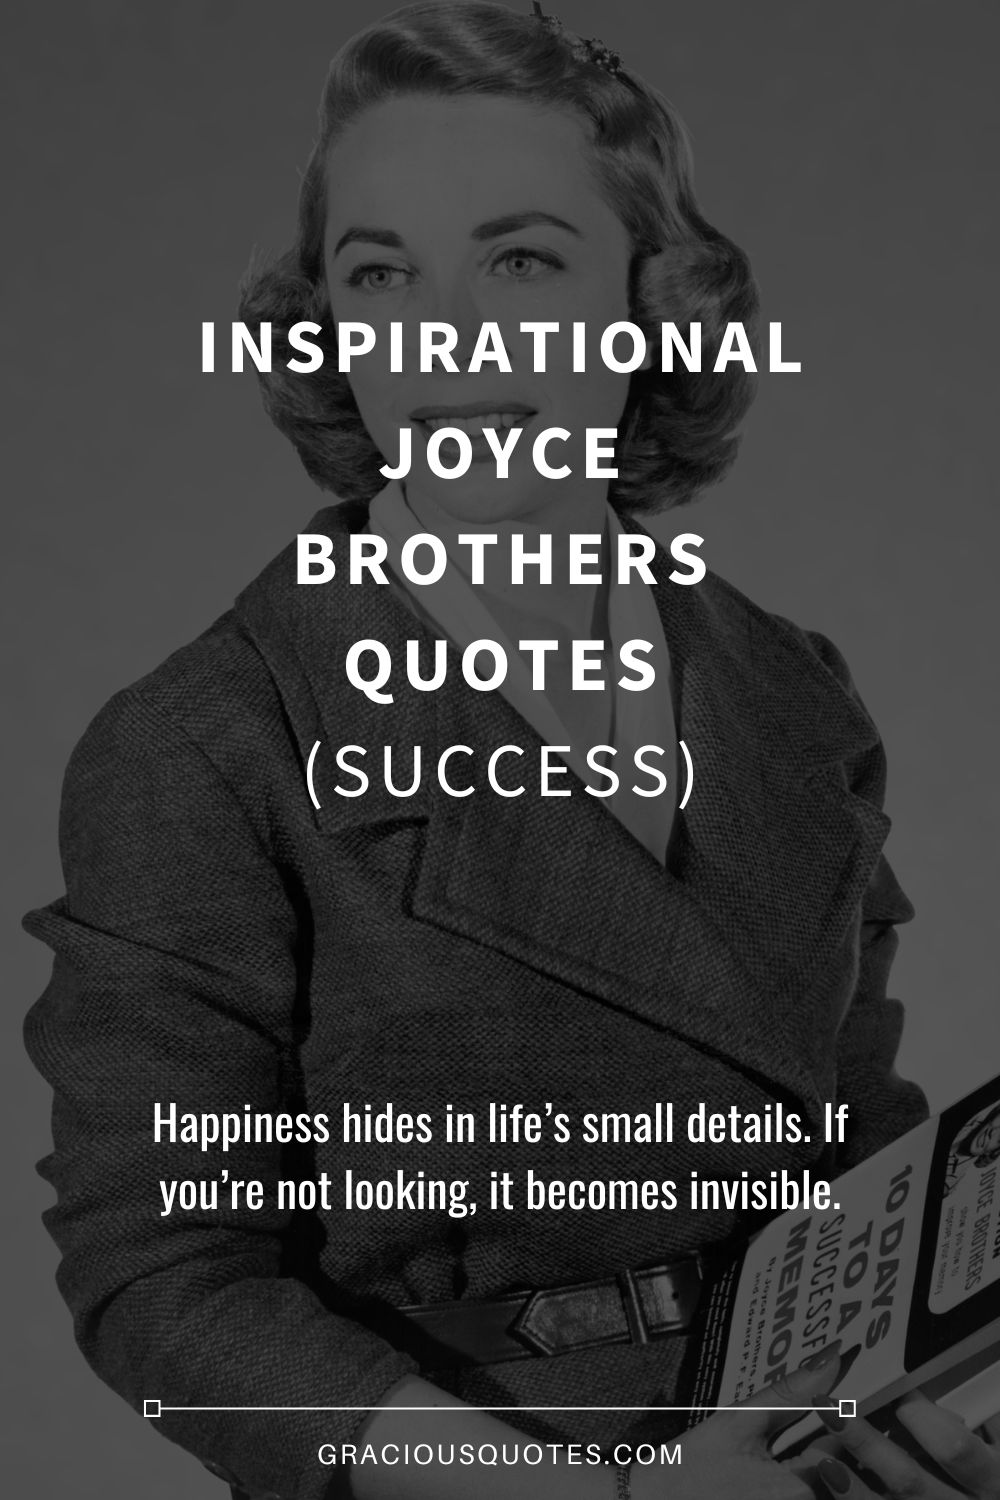 Inspirational Joyce Brothers Quotes (SUCCESS) - Gracious Quotes